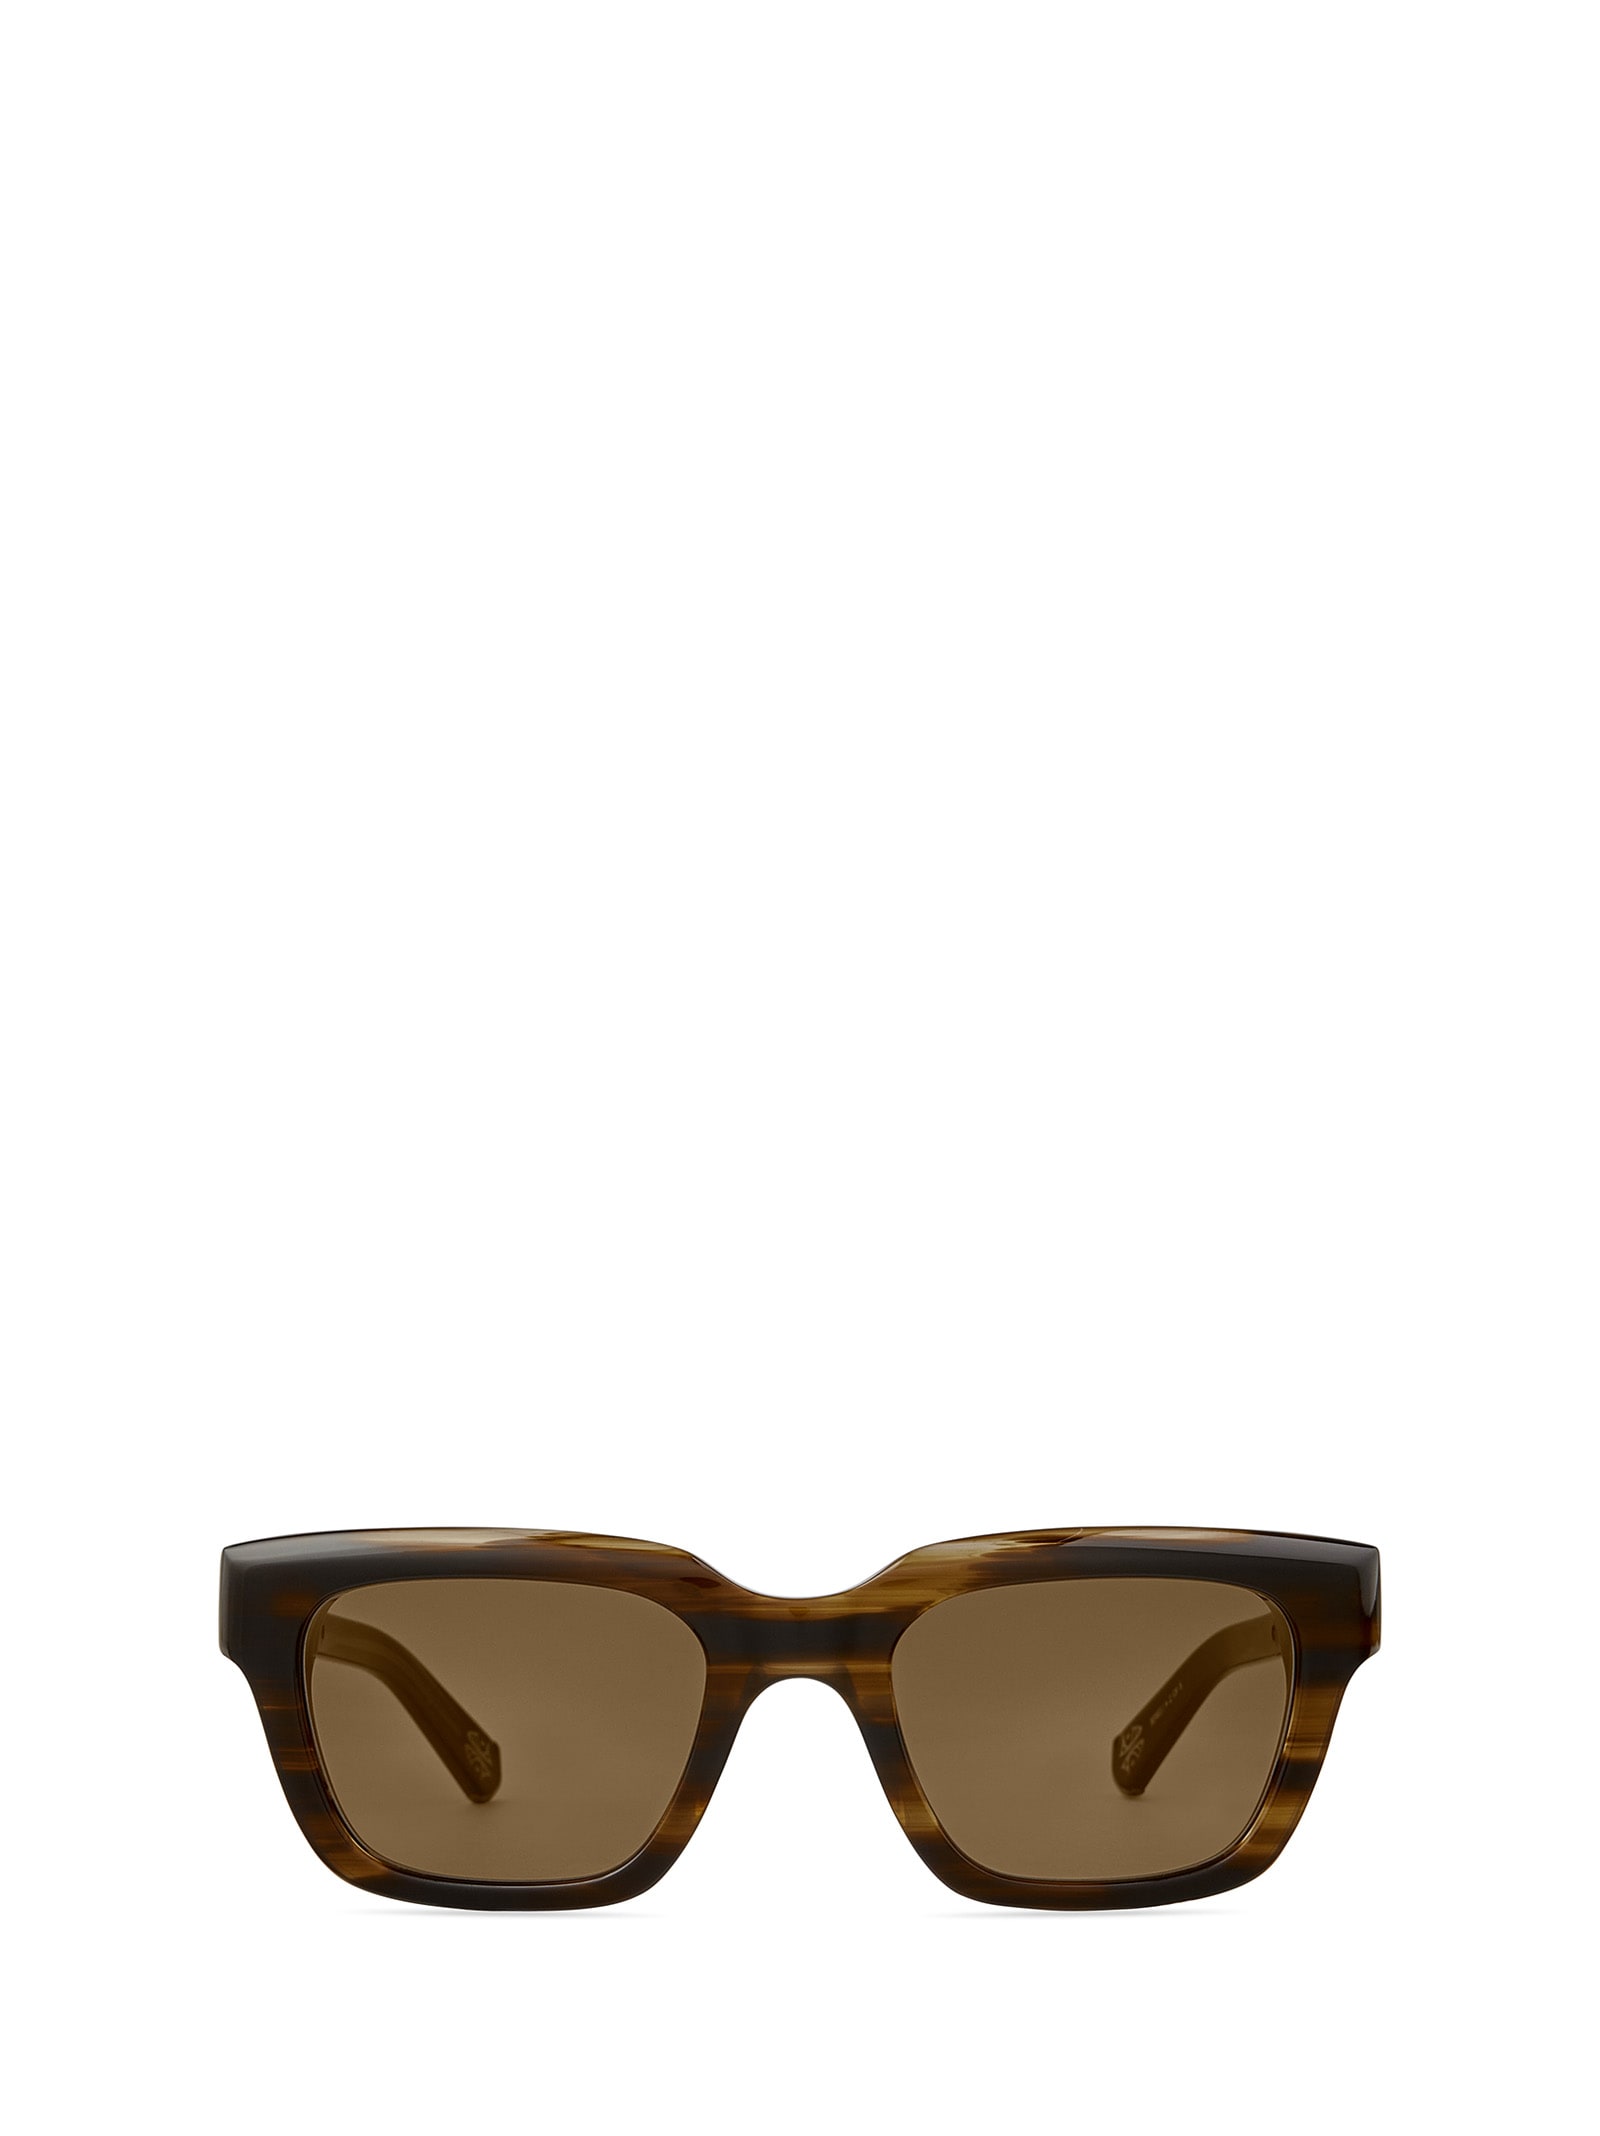 Maven S Koa-white Gold/semi-flat Kona Brown Sunglasses